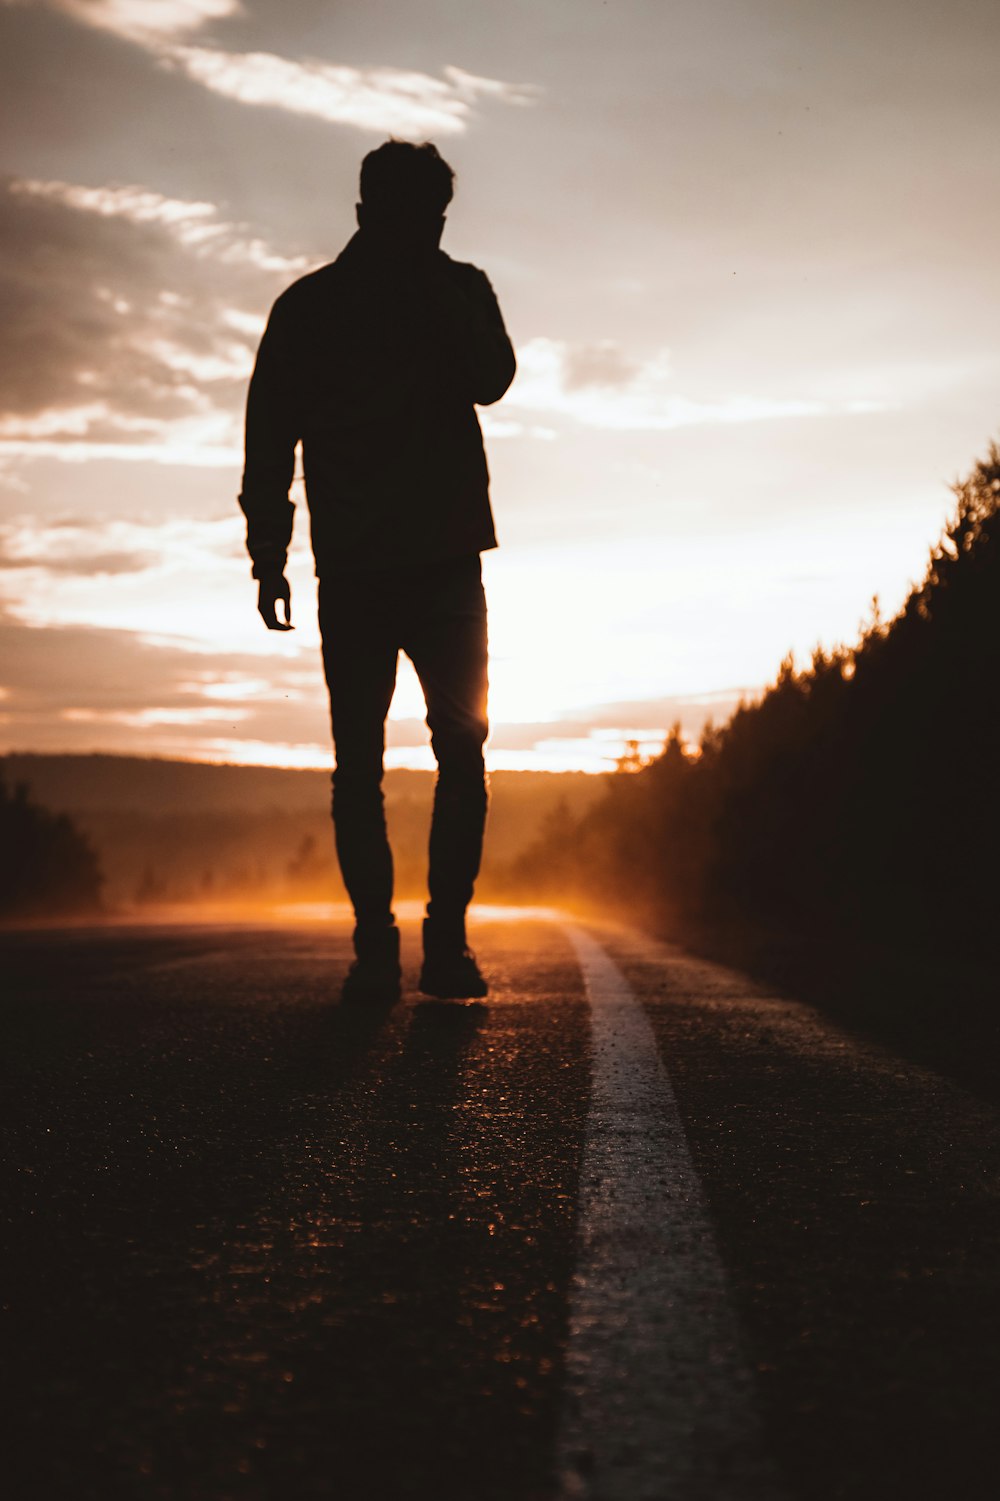 Silueta de la persona de pie en la carretera durante la puesta del sol